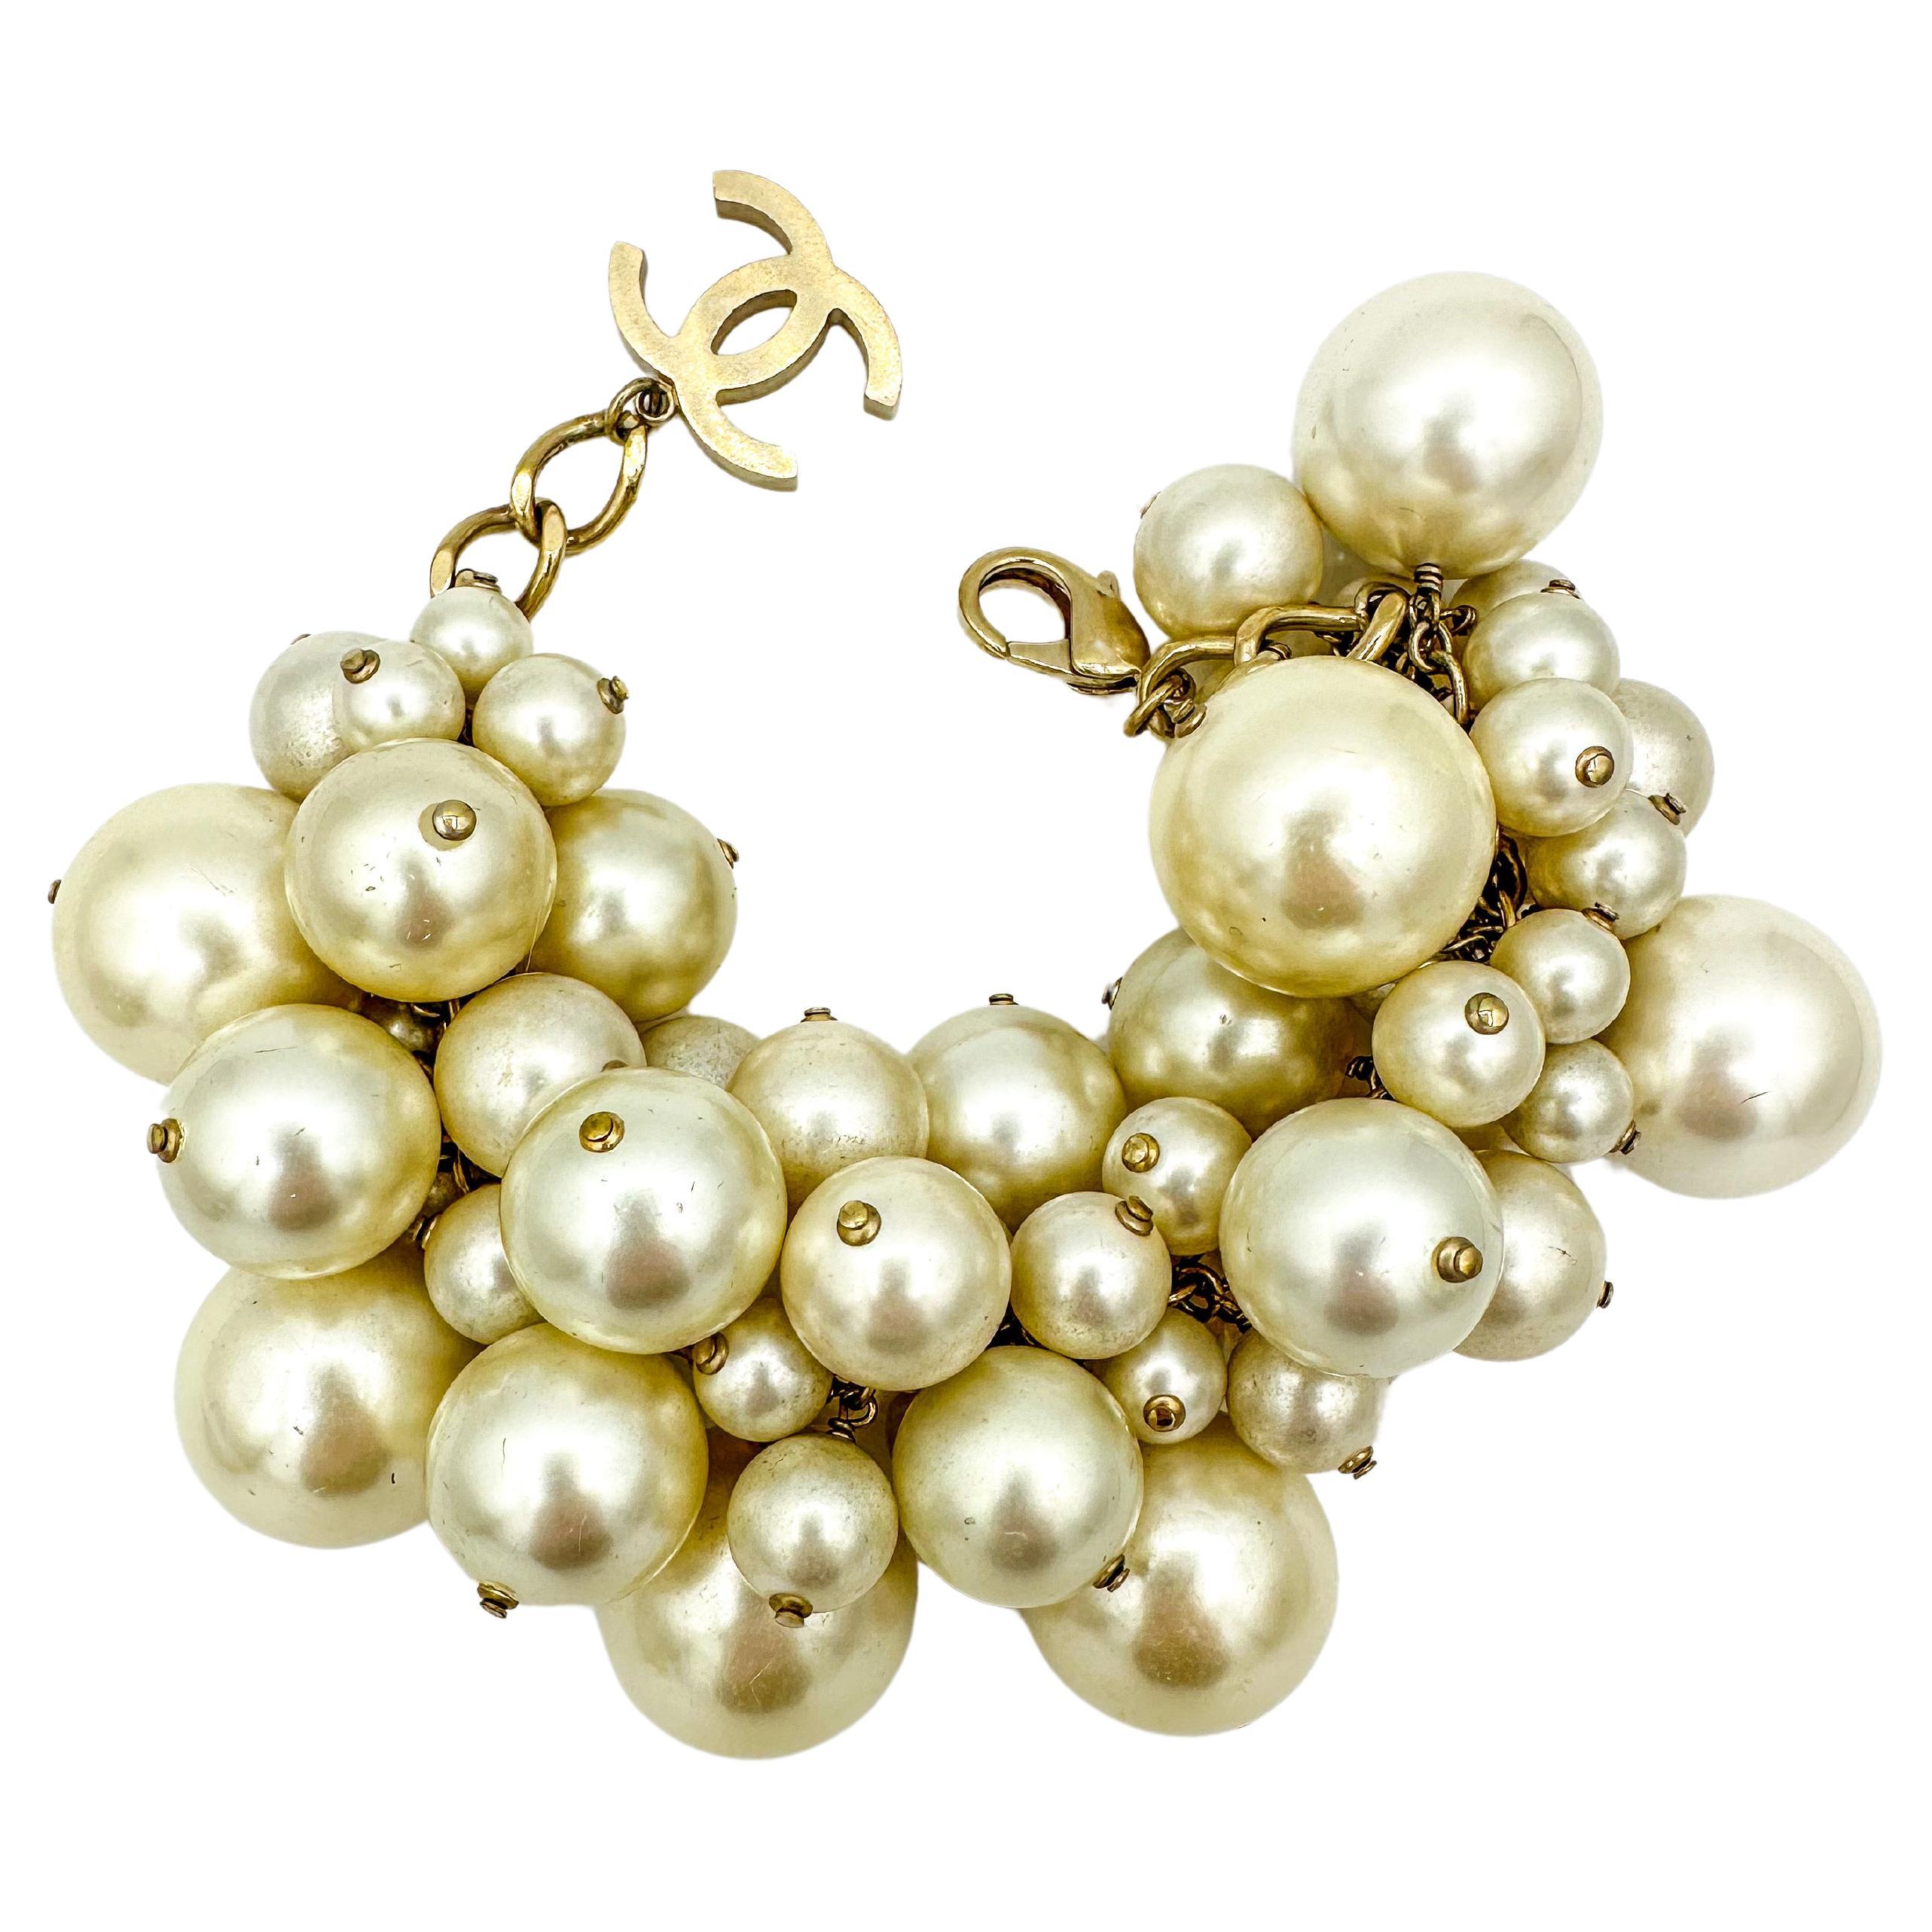 Oversize Chanel Spring 2013 Runway Pearl Cluster Bracelet For Sale